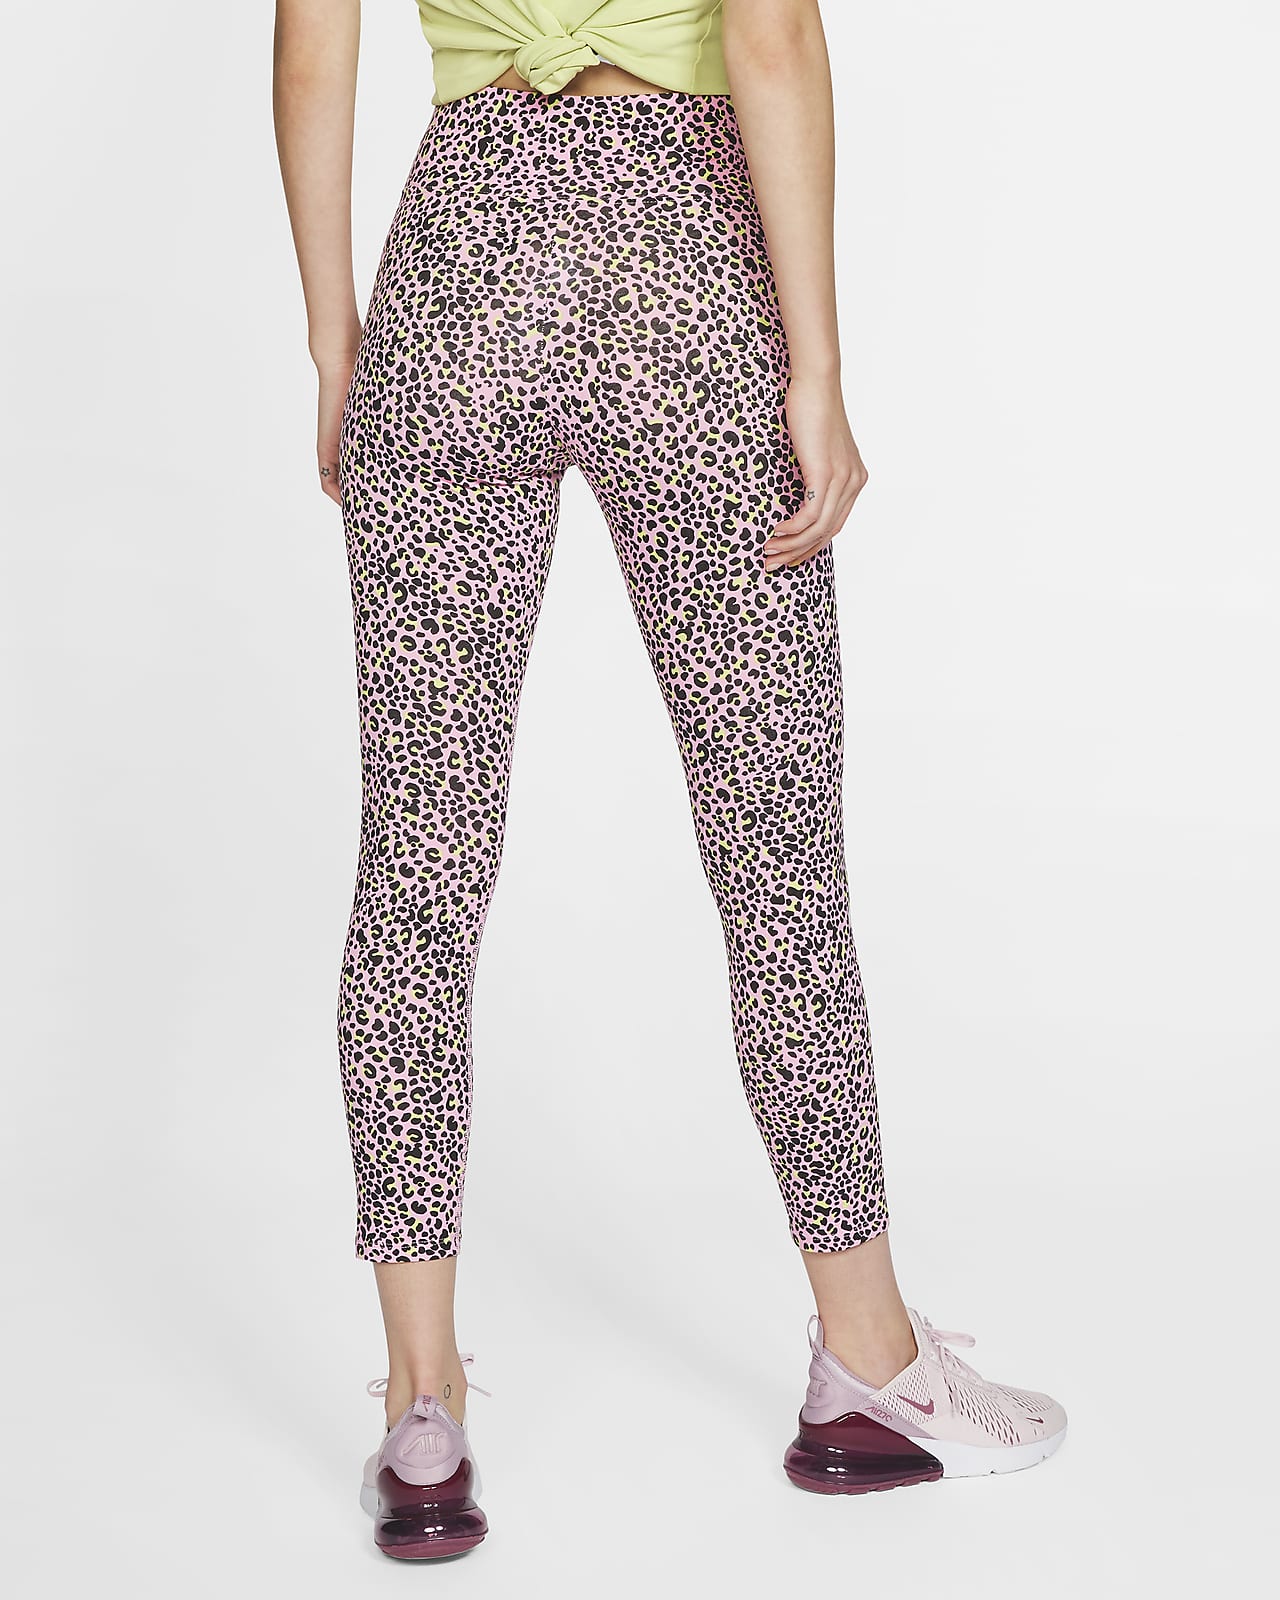 nike womens leopard leggings